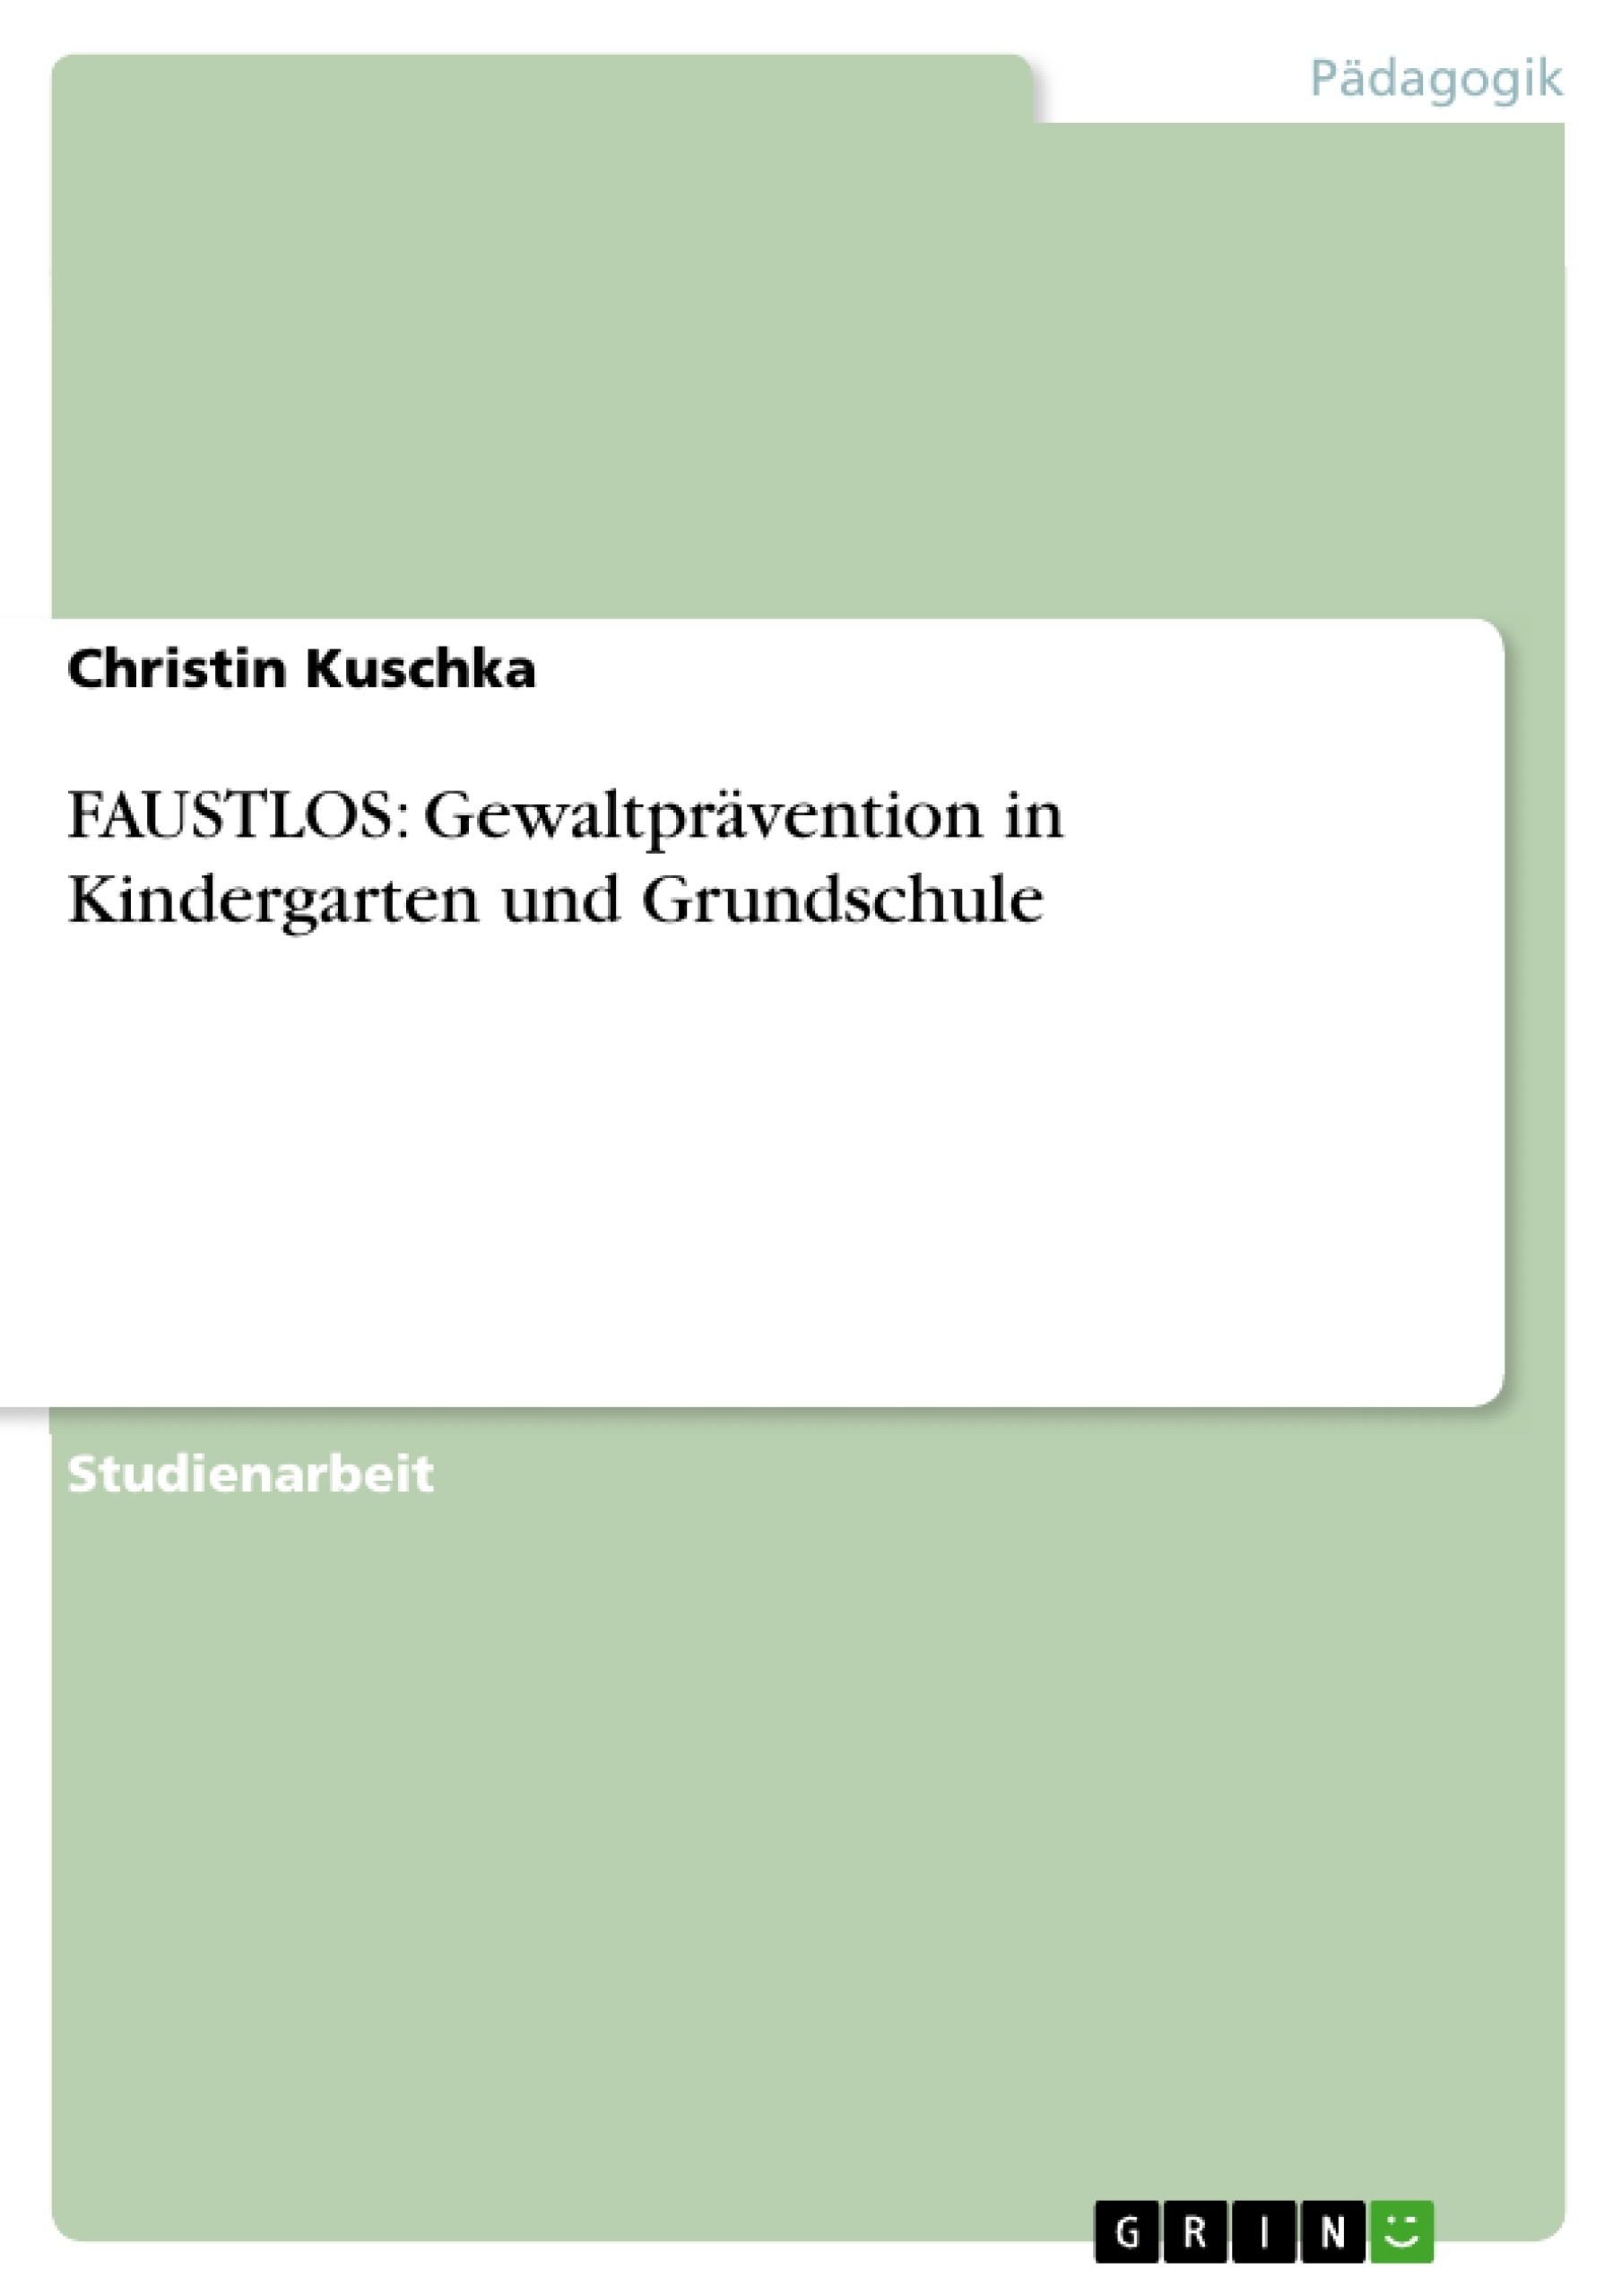 Title: FAUSTLOS: Gewaltprävention in Kindergarten und Grundschule